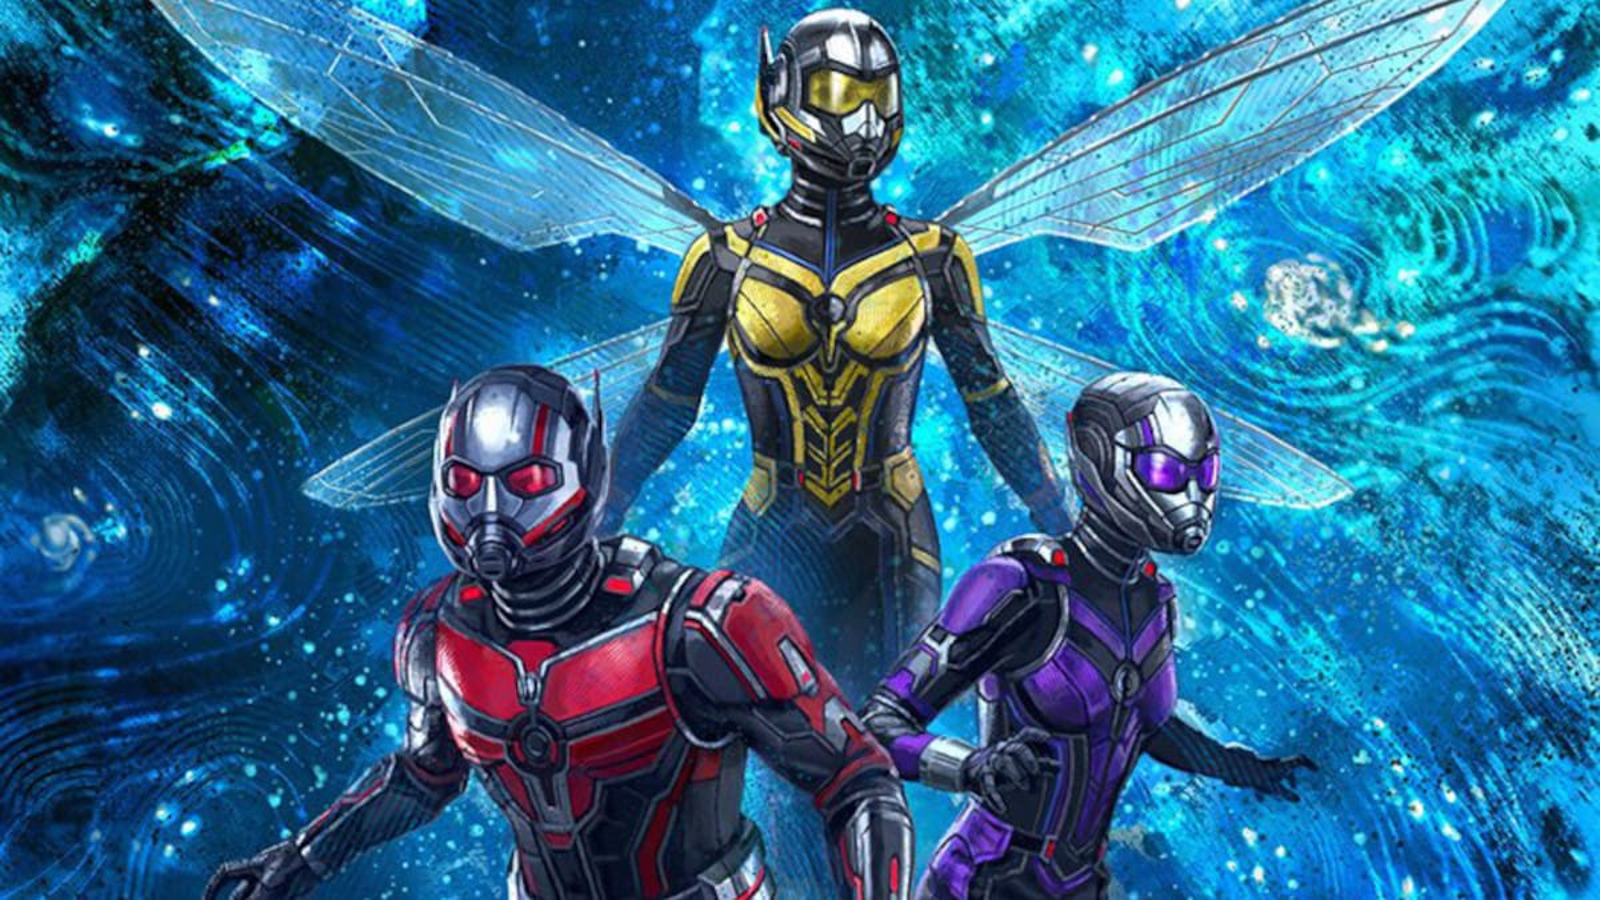 Homem-Formiga e Vespa: Quantumania' marca a chegada da fase 5 do Universo  Marvel - Entretenimento - Jornal NH